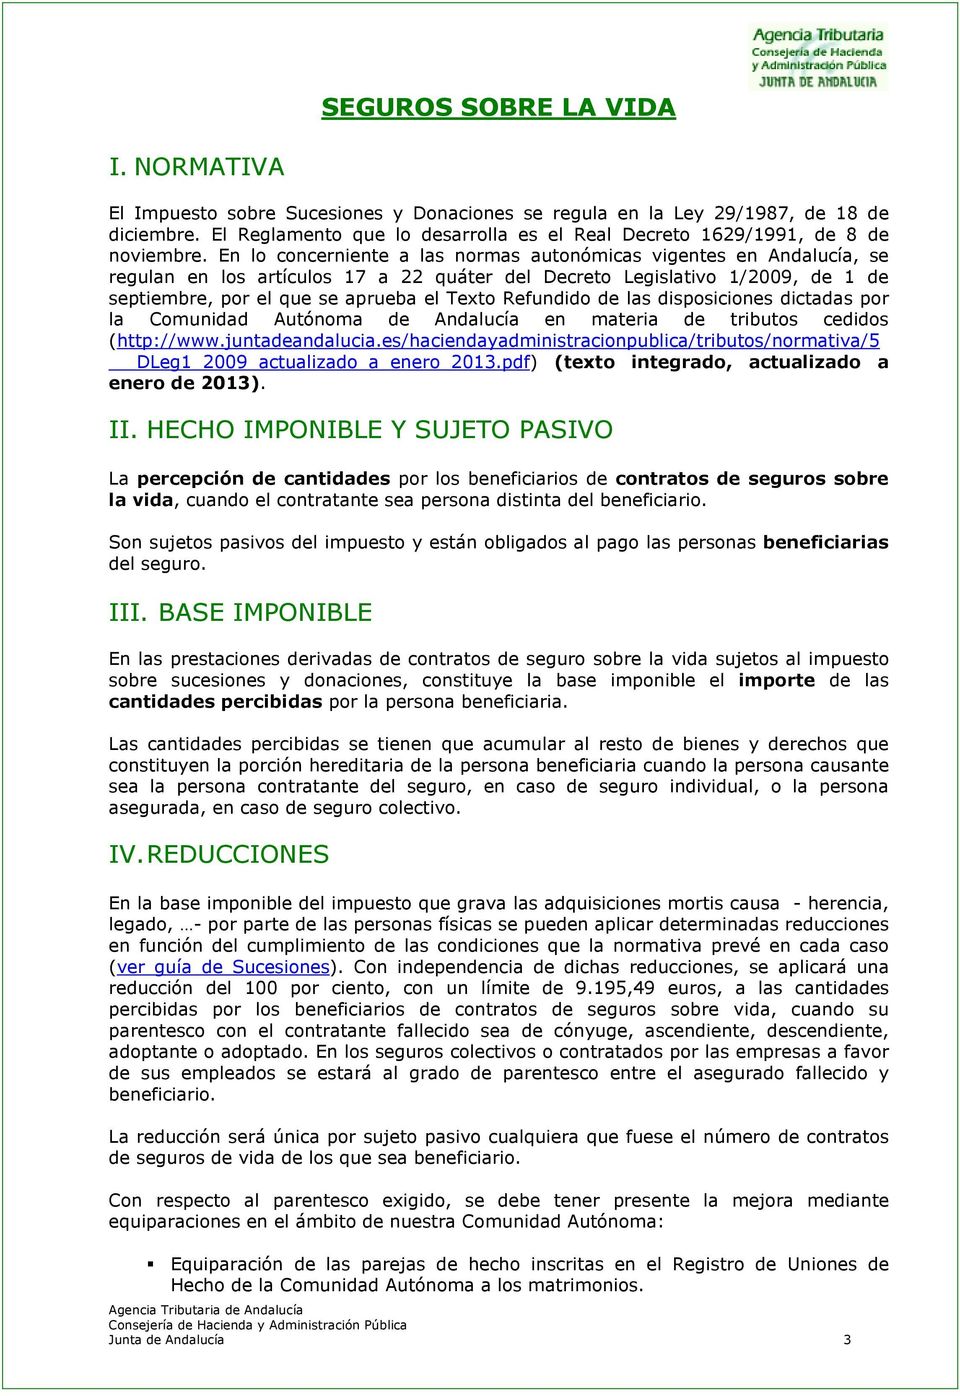 En lo concerniente a las normas autonómicas vigentes en Andalucía, se regulan en los artículos 17 a 22 quáter del Decreto Legislativo 1/2009, de 1 de septiembre, por el que se aprueba el Texto